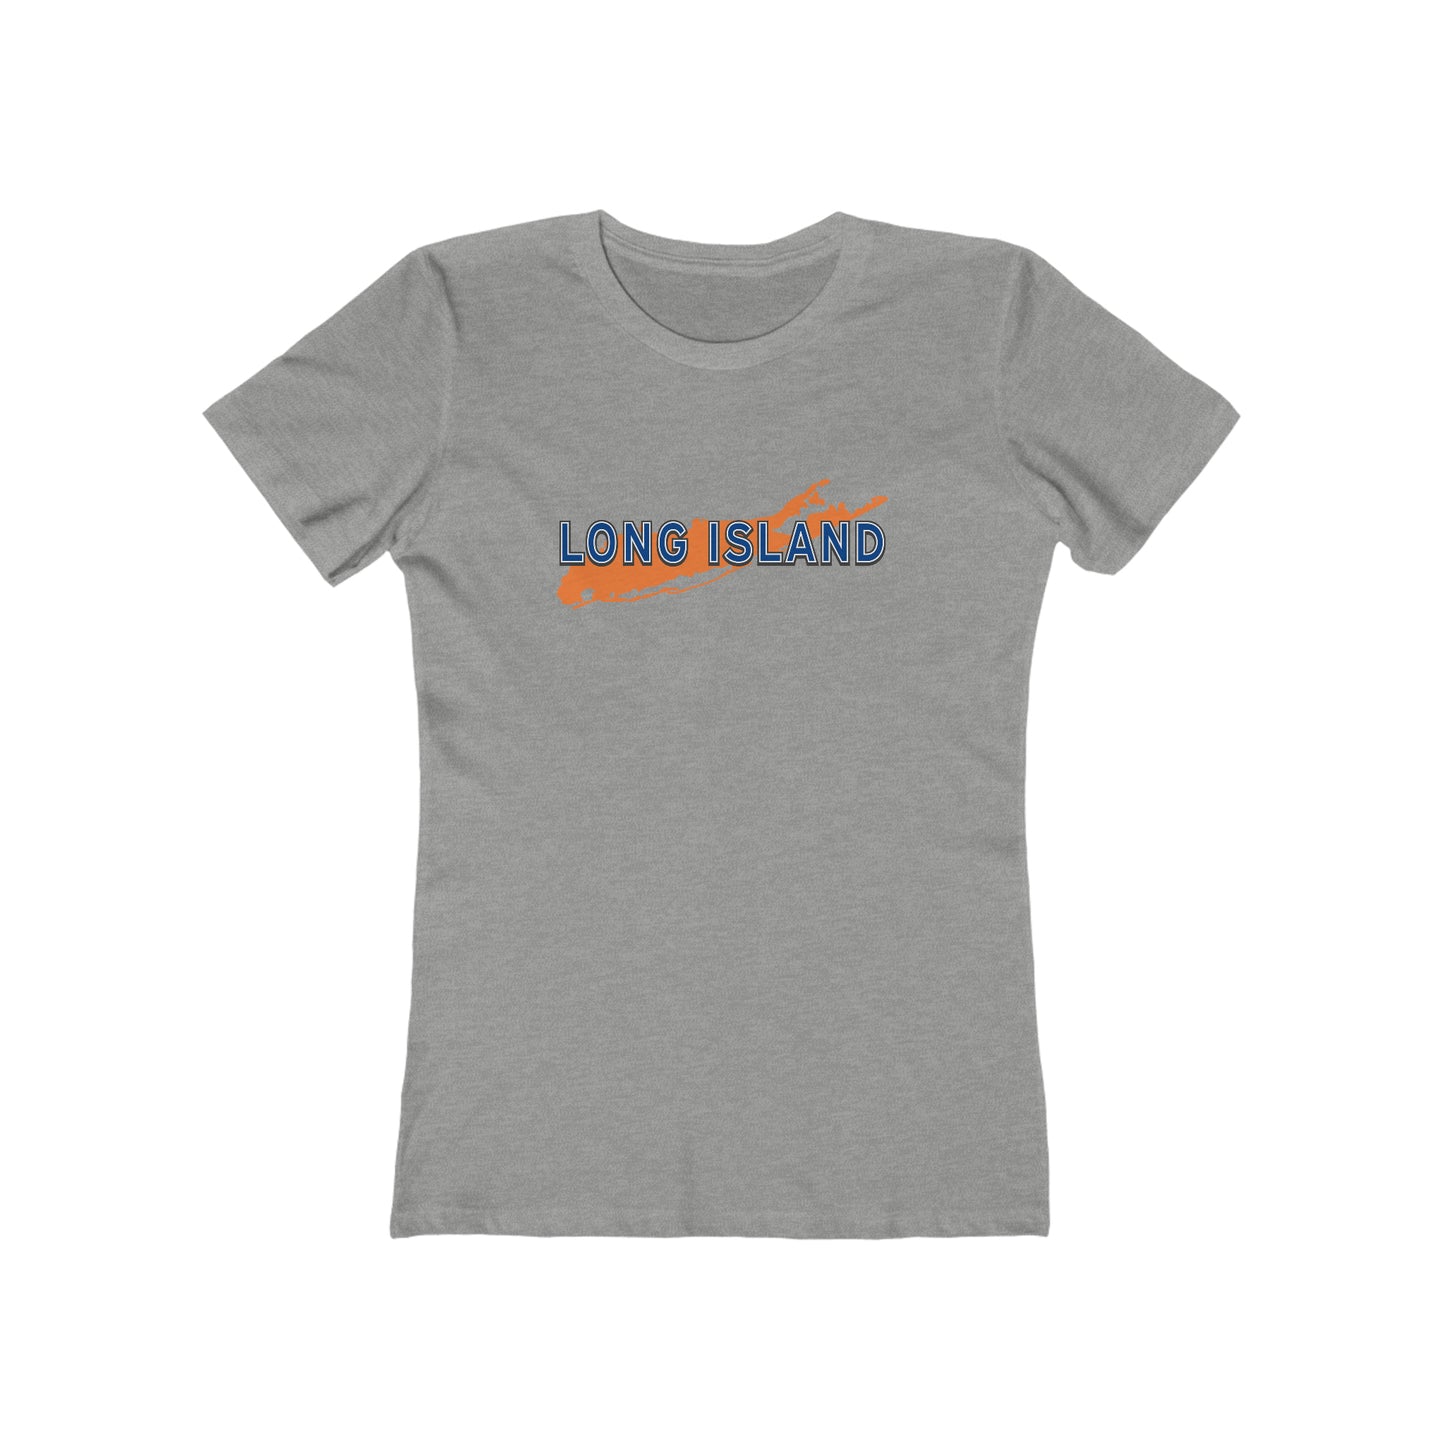 Long Island - Women's T-Shirt